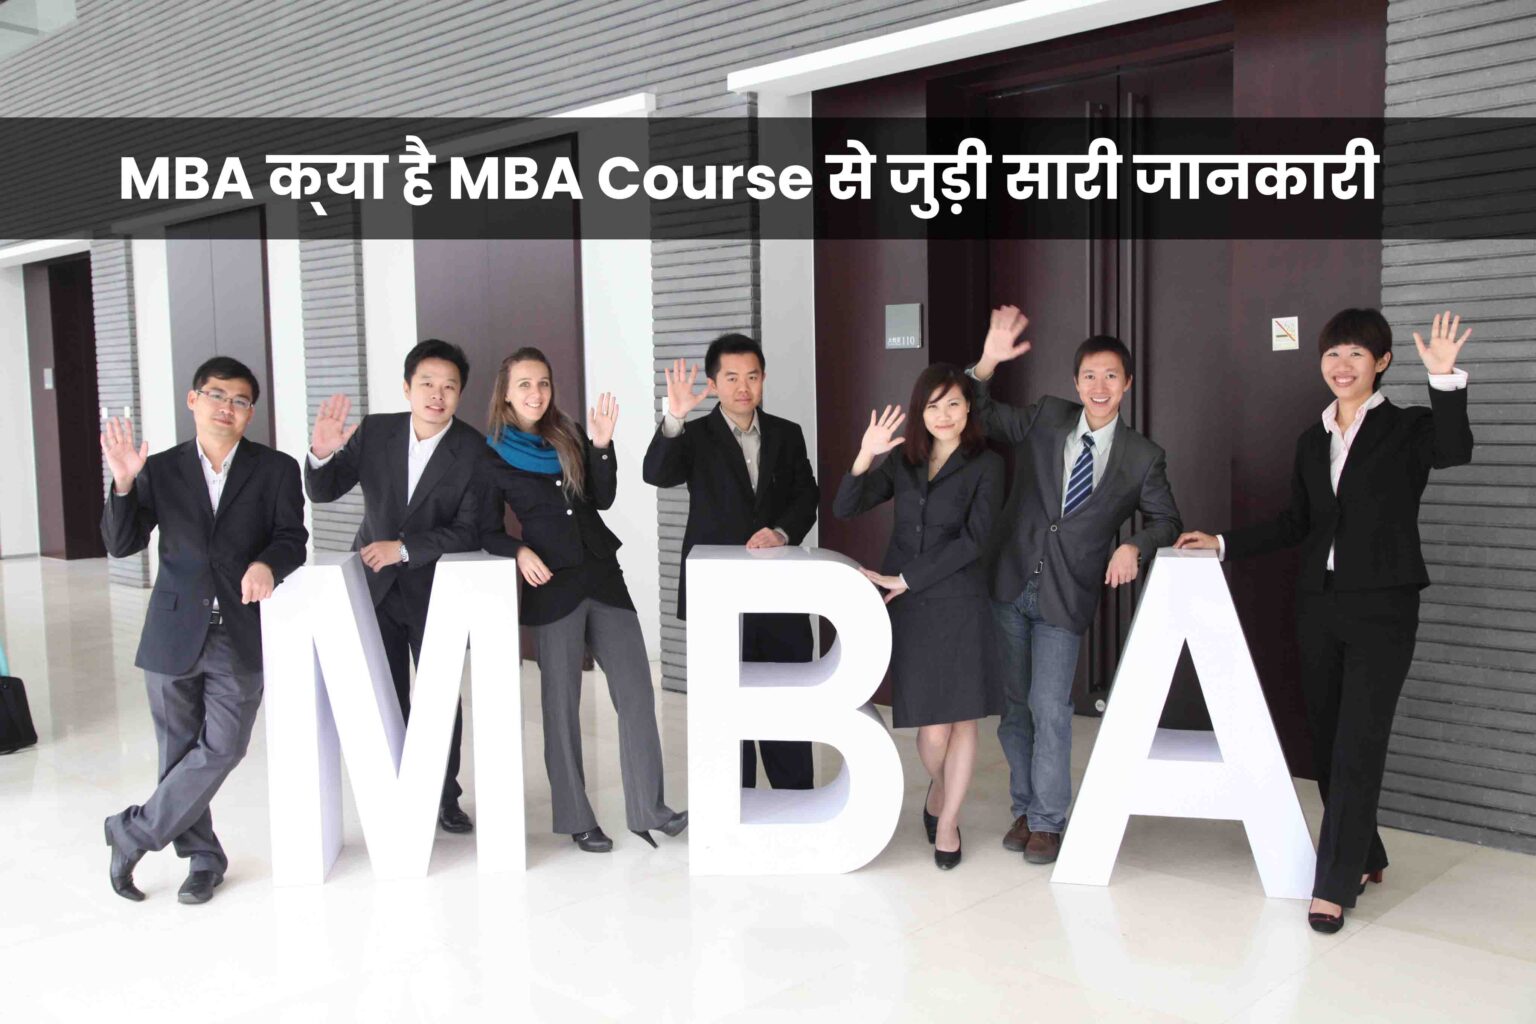 एमबीए कोर्स (MBA Course) क्या है? फीस, कैरियर ऑप्शन और योग्यता के बारे में जानकारी